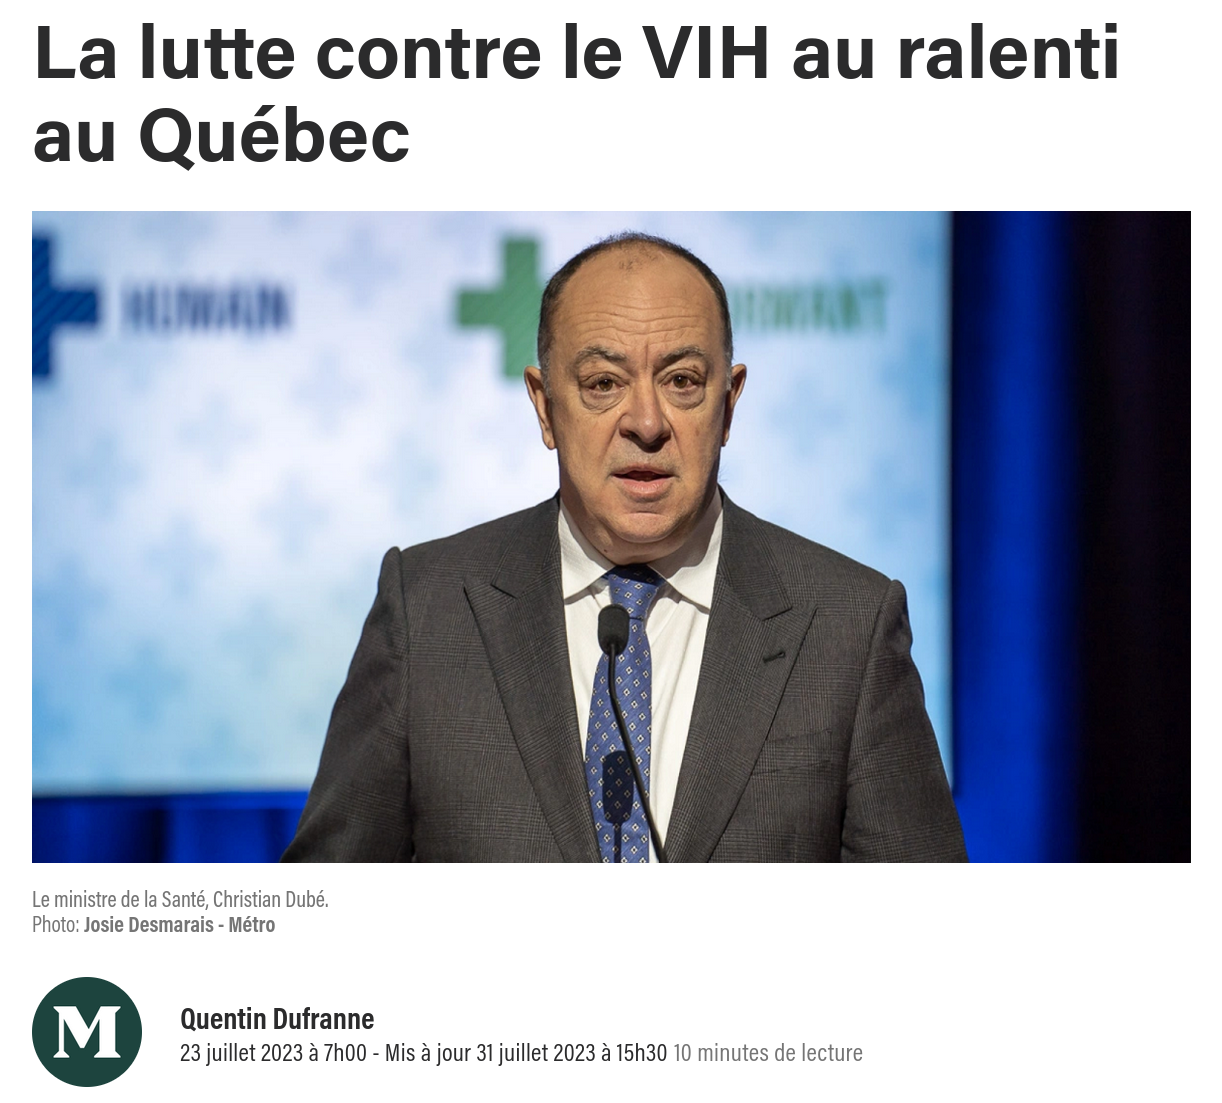 Capture d'écran de l'article La lutte contre le VIH au ralenti au Québec.